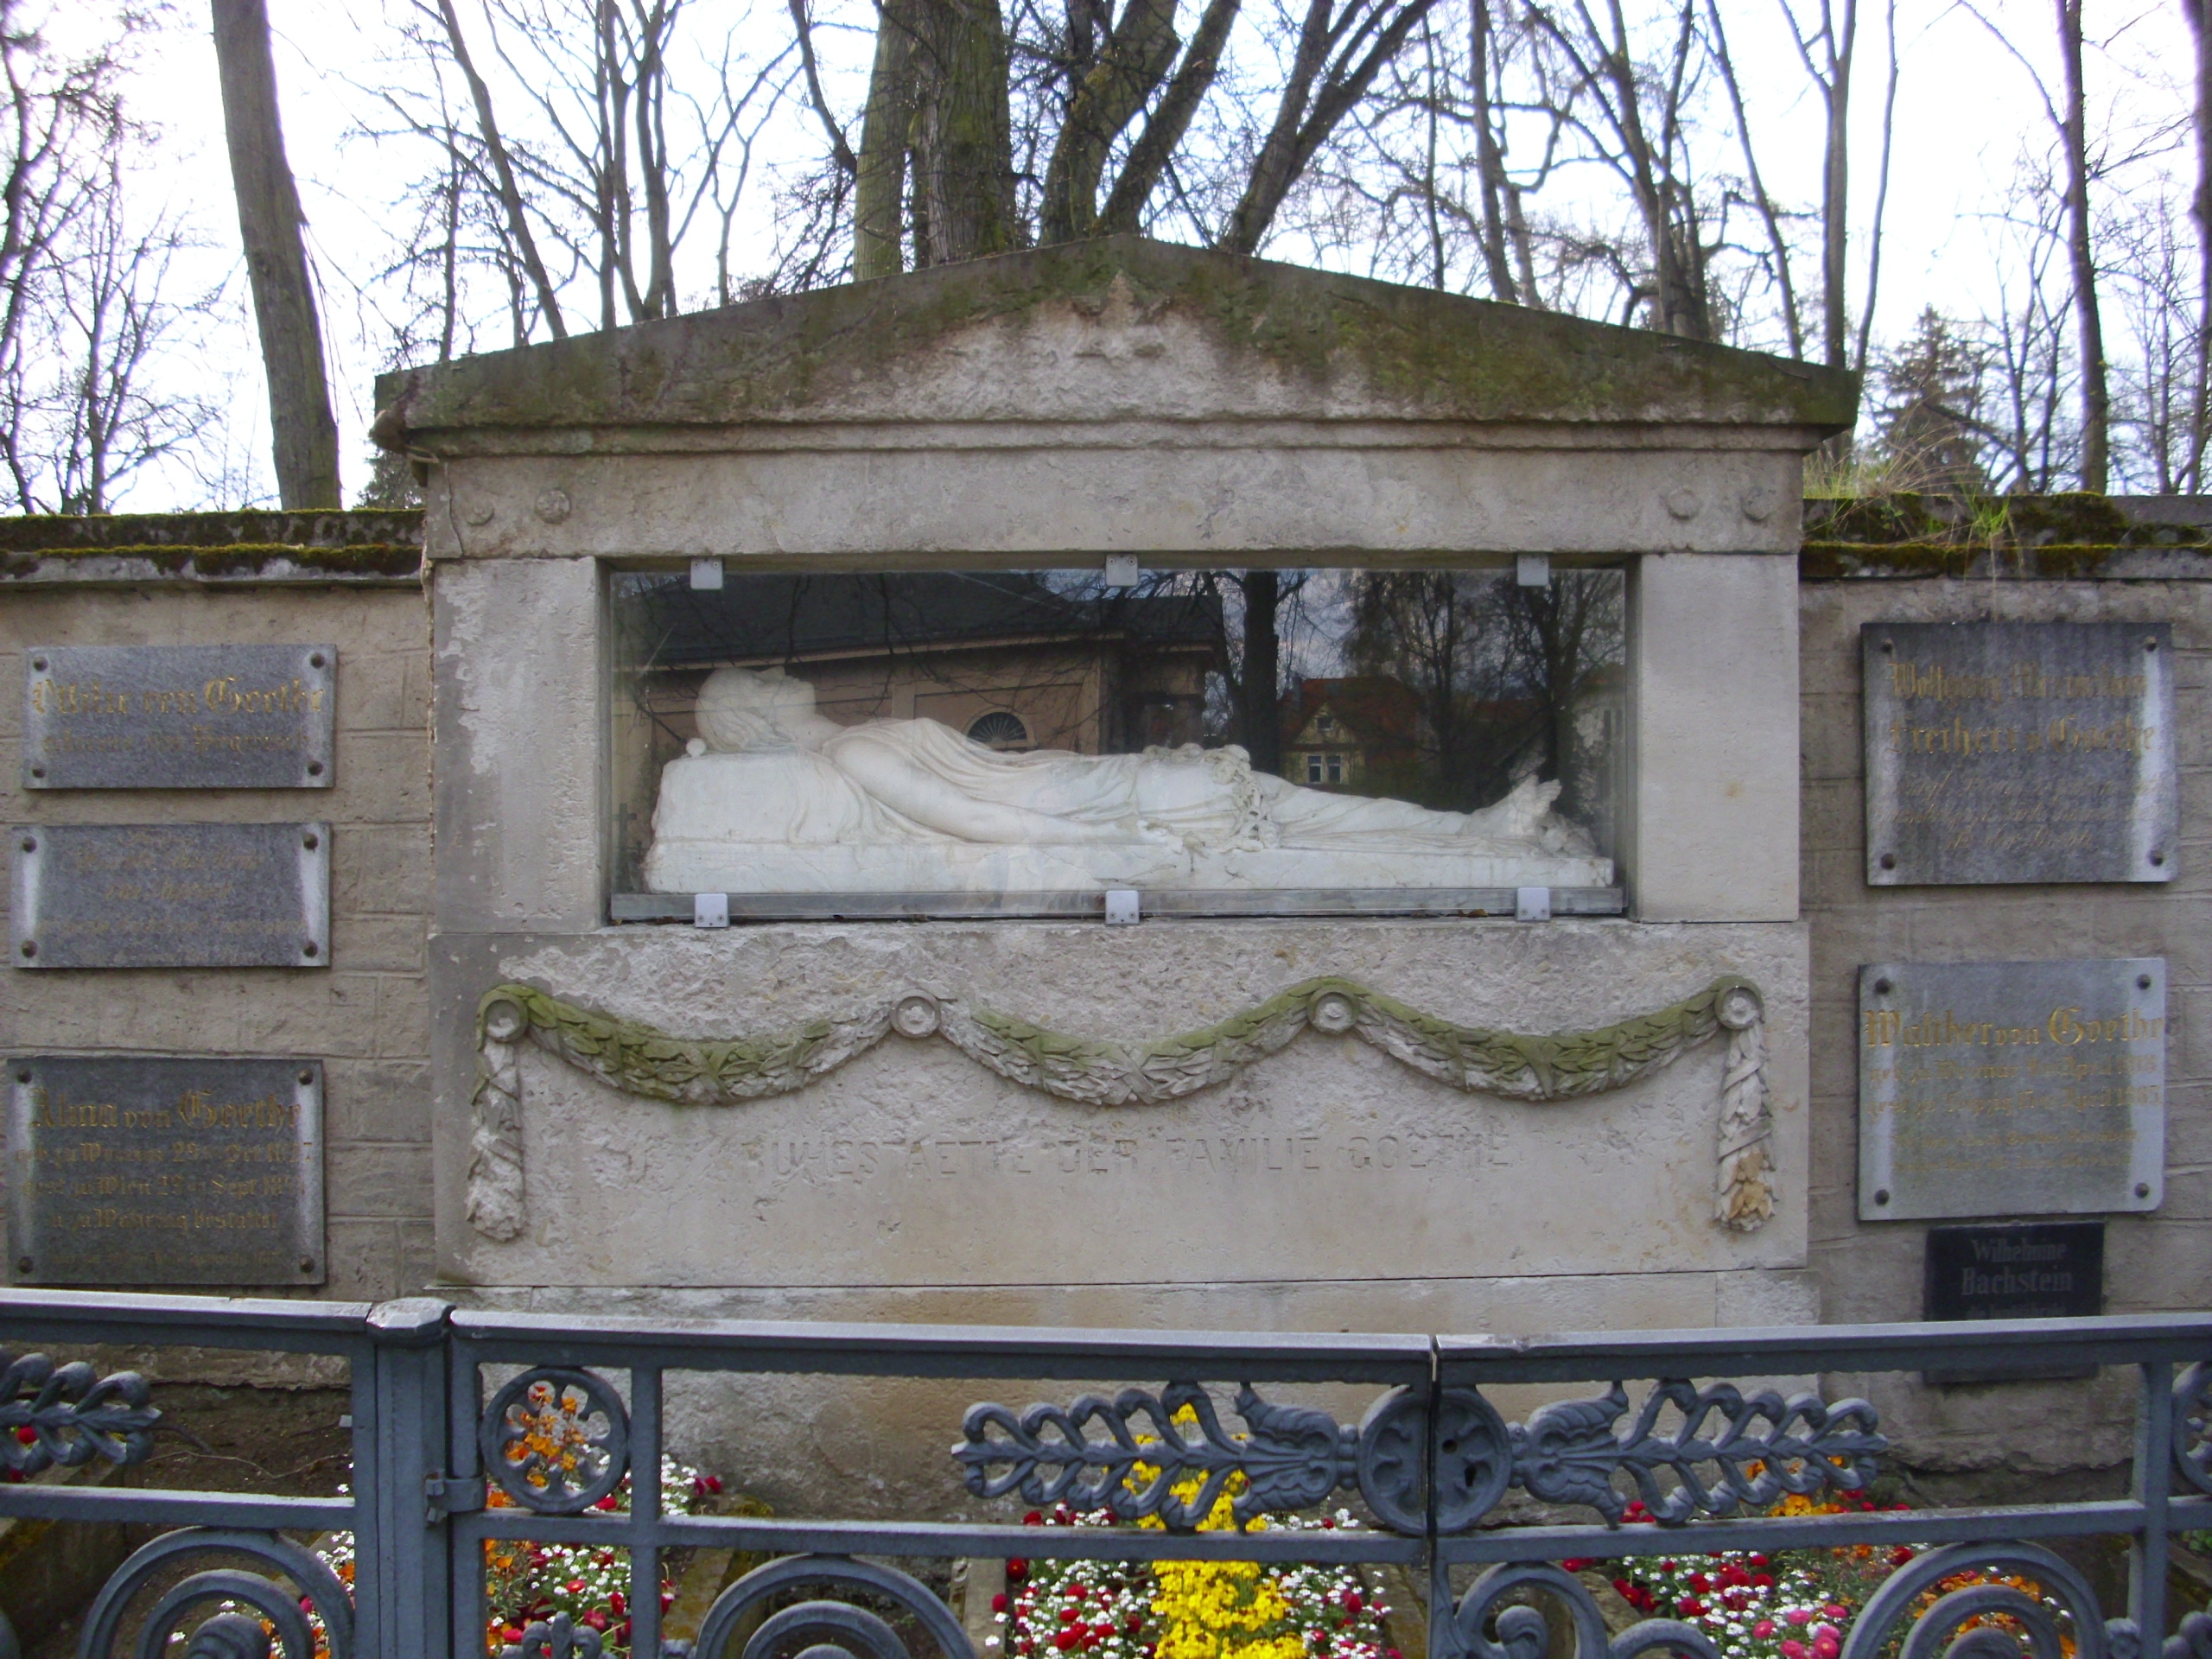 Farbfoto: Das Familiengrab der Familie von Goethe in Weimar im Jahre 2012. In der Grabstätte ruhen fünf Mitglieder der Famile Goethe. Eine Gedenktafel weist auf die in der Nähe beigesetzte Kinderfrau der Familie Goethe hin. Fotograf: Bernd Paepcke.